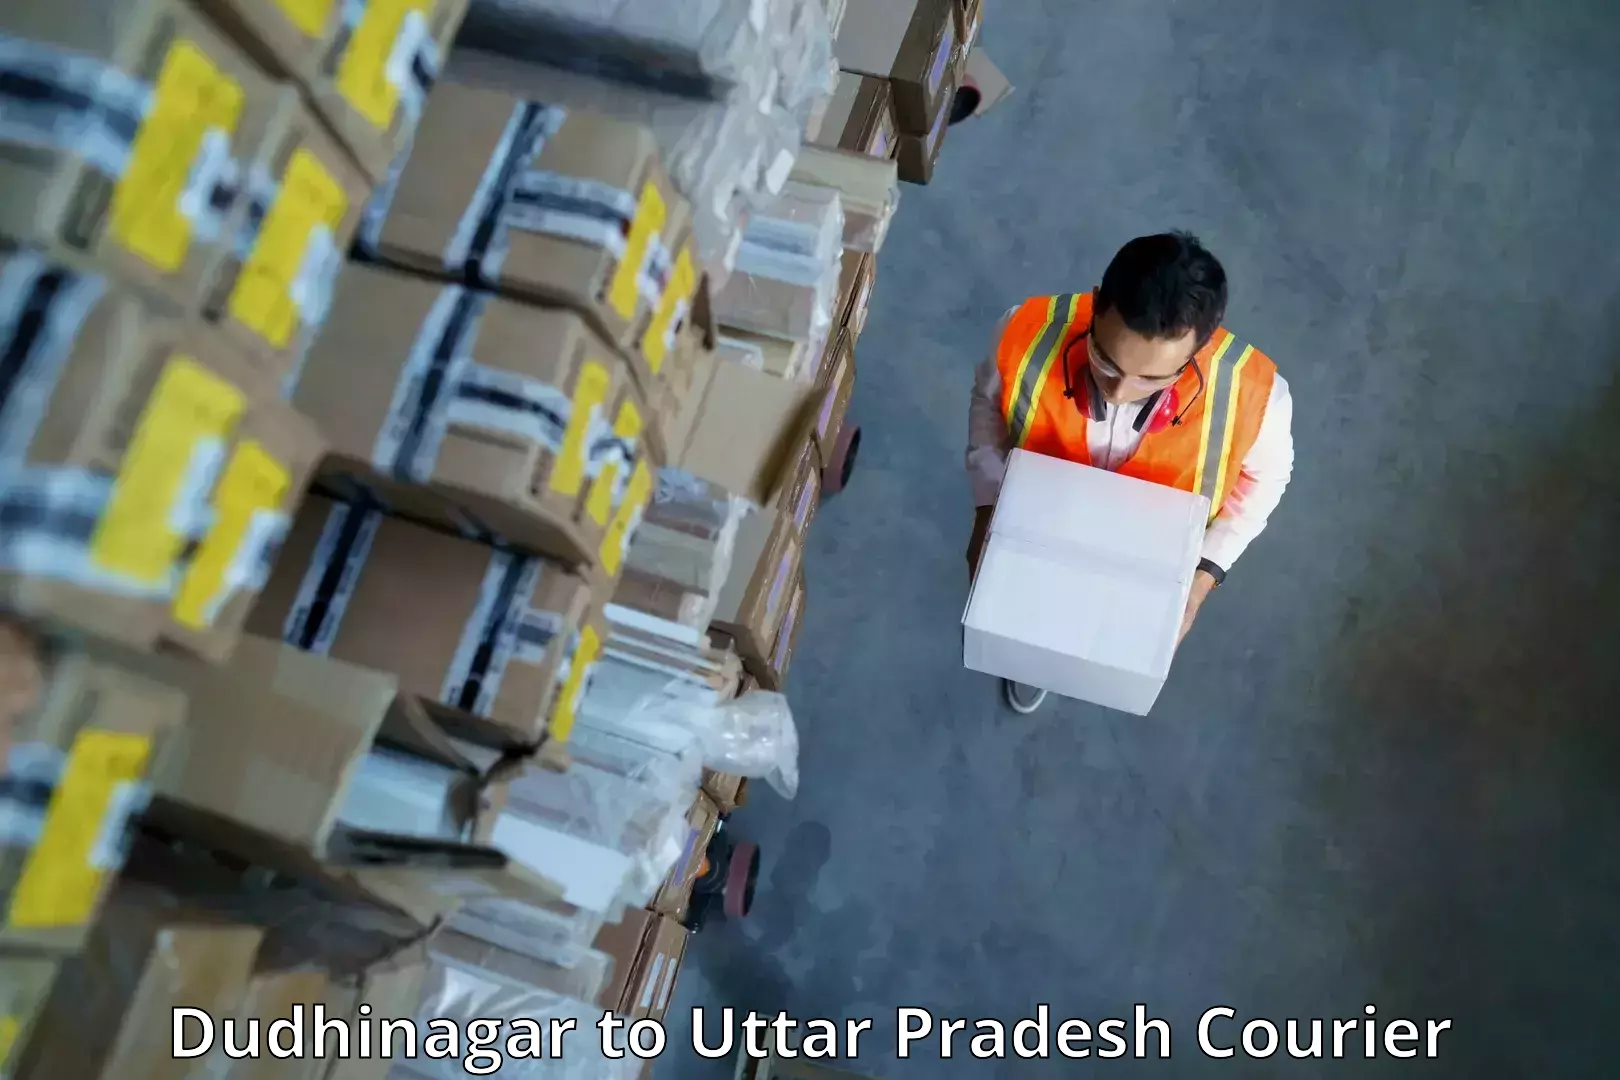 24/7 shipping services Dudhinagar to Hamirpur Uttar Pradesh